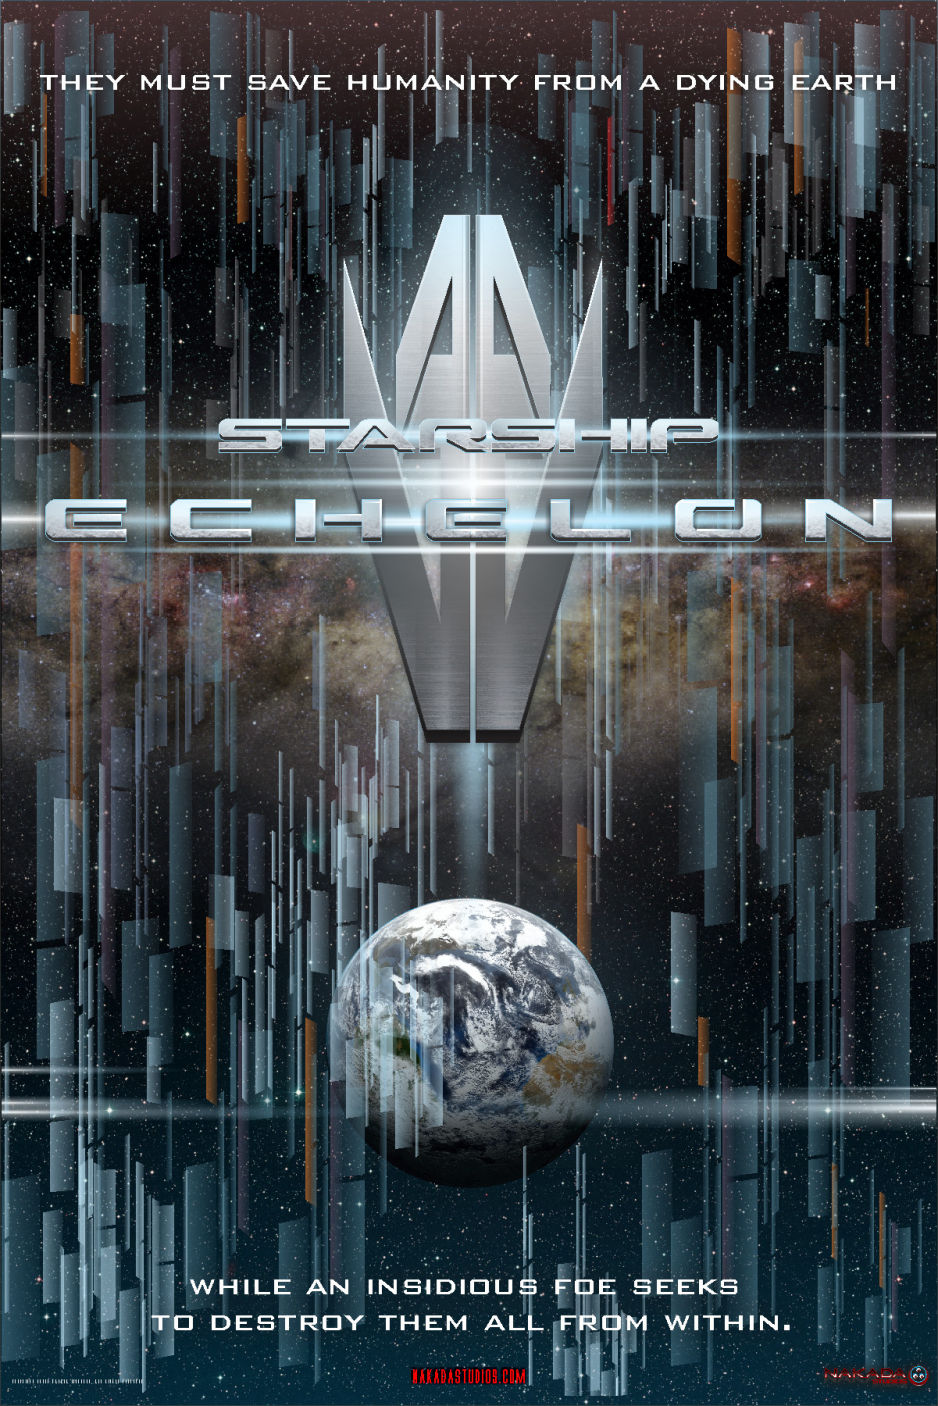 Starship Echelon Teaser Poster. Copyright, Scott Nakada 11-24-22